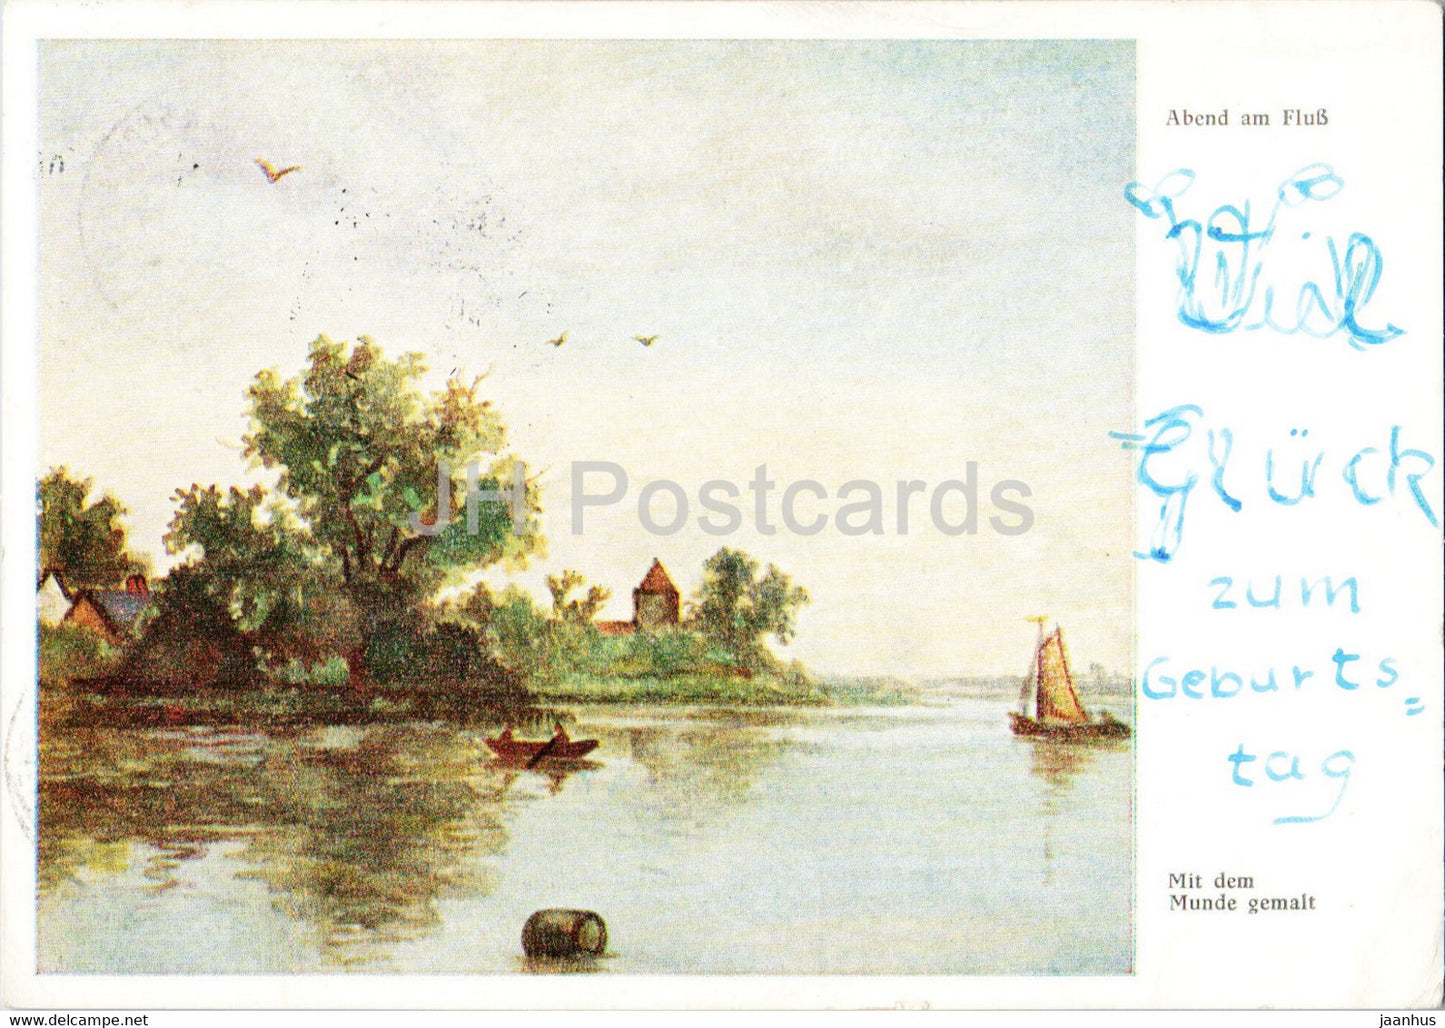 painting - Abend am Fluss - Kunst der Mund und Fuss Schaffenden - old postcard - German art - Germany - used - JH Postcards